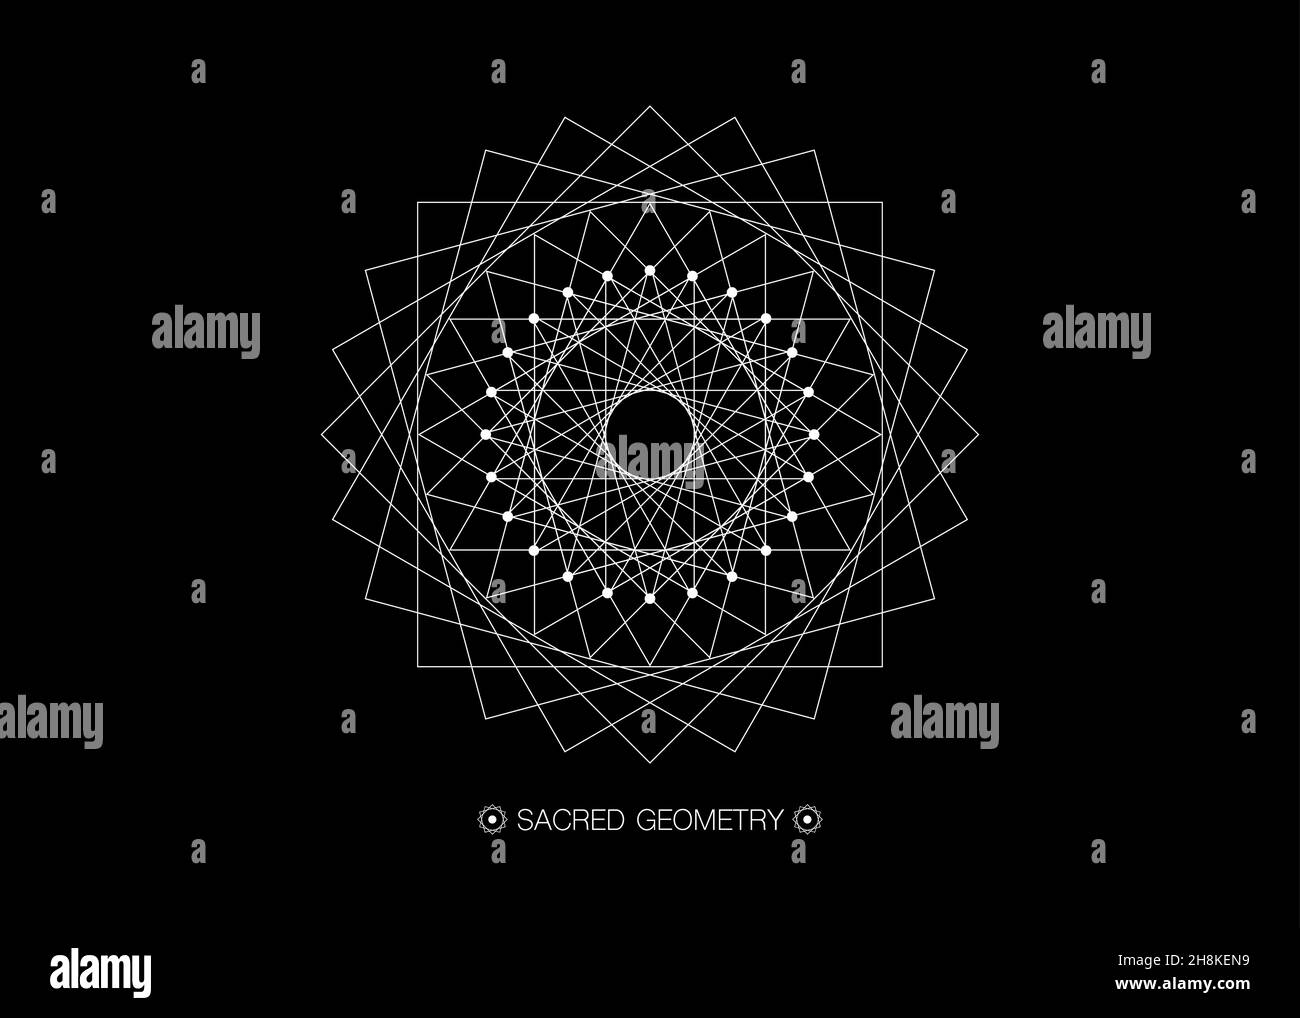 Cercle mandala, géométrie sacrée, cadre rond signe géométrique logo design avec entrelacement de formes carrées et triangulaires, ligne noire dessin mystique Illustration de Vecteur